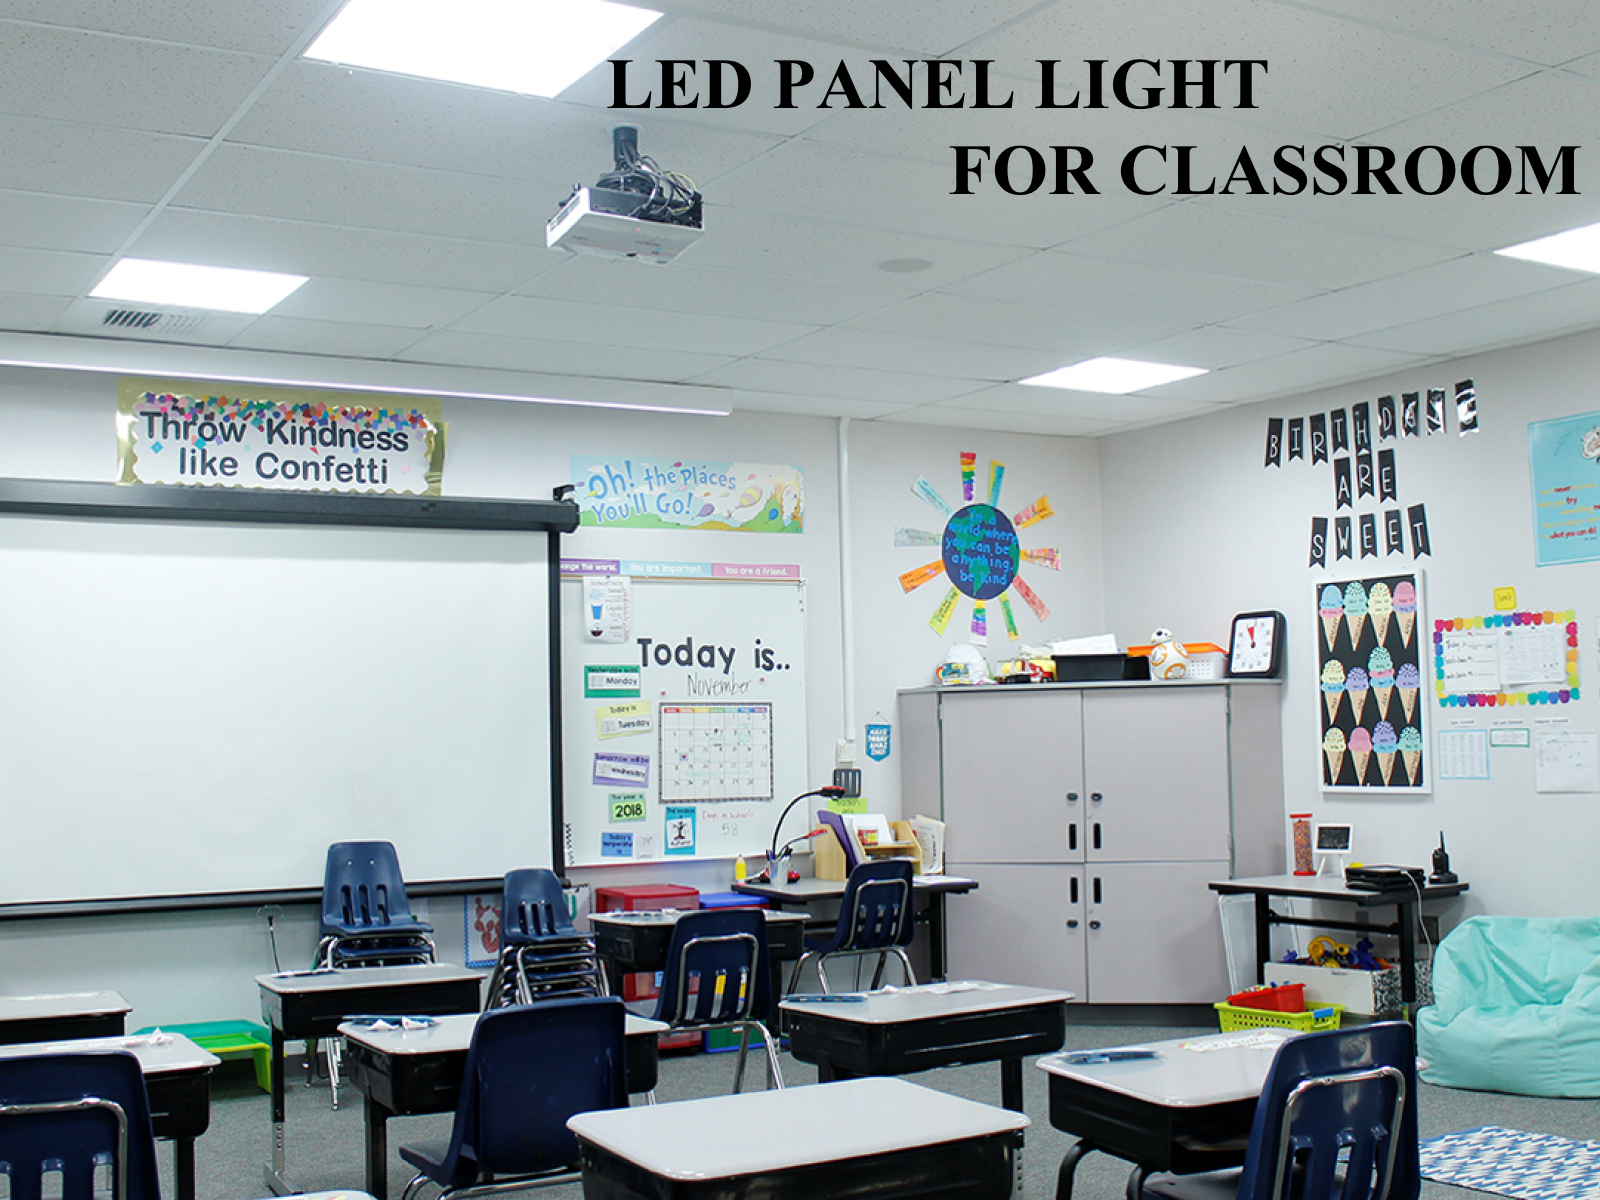 Requisitos de iluminação, potência, temperatura de cor e especificações de instalação de lâmpadas LED para salas de aula